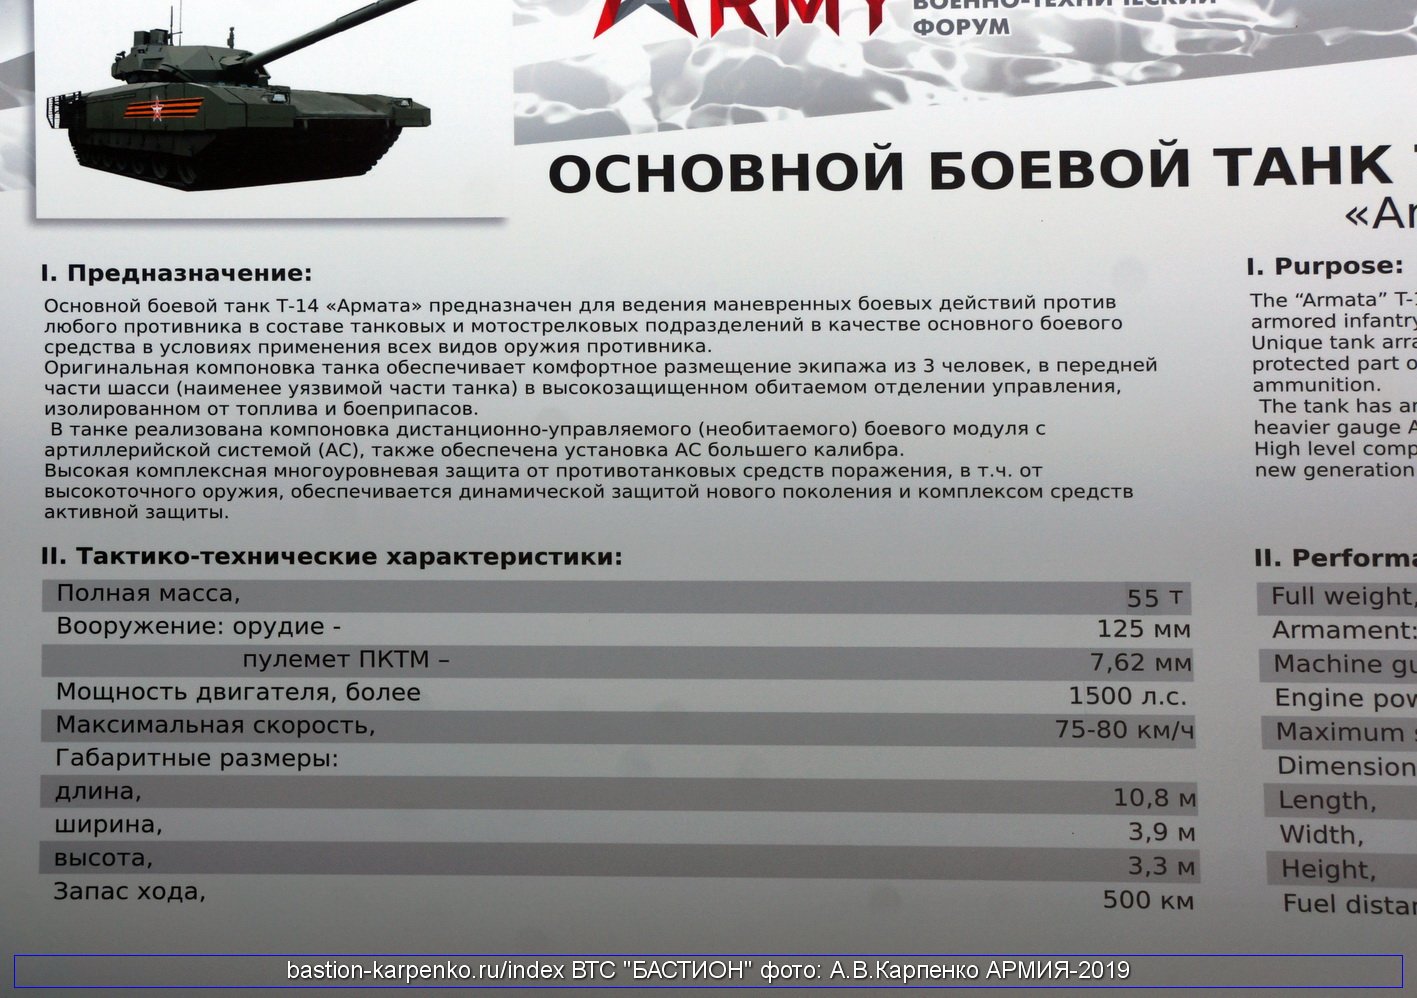 Расход танка абрамс. Танк Армата т-14 характеристики. Расход топлива у танка т-14 Армата. ТТХ танка т14. Вес танка Армата т-14.